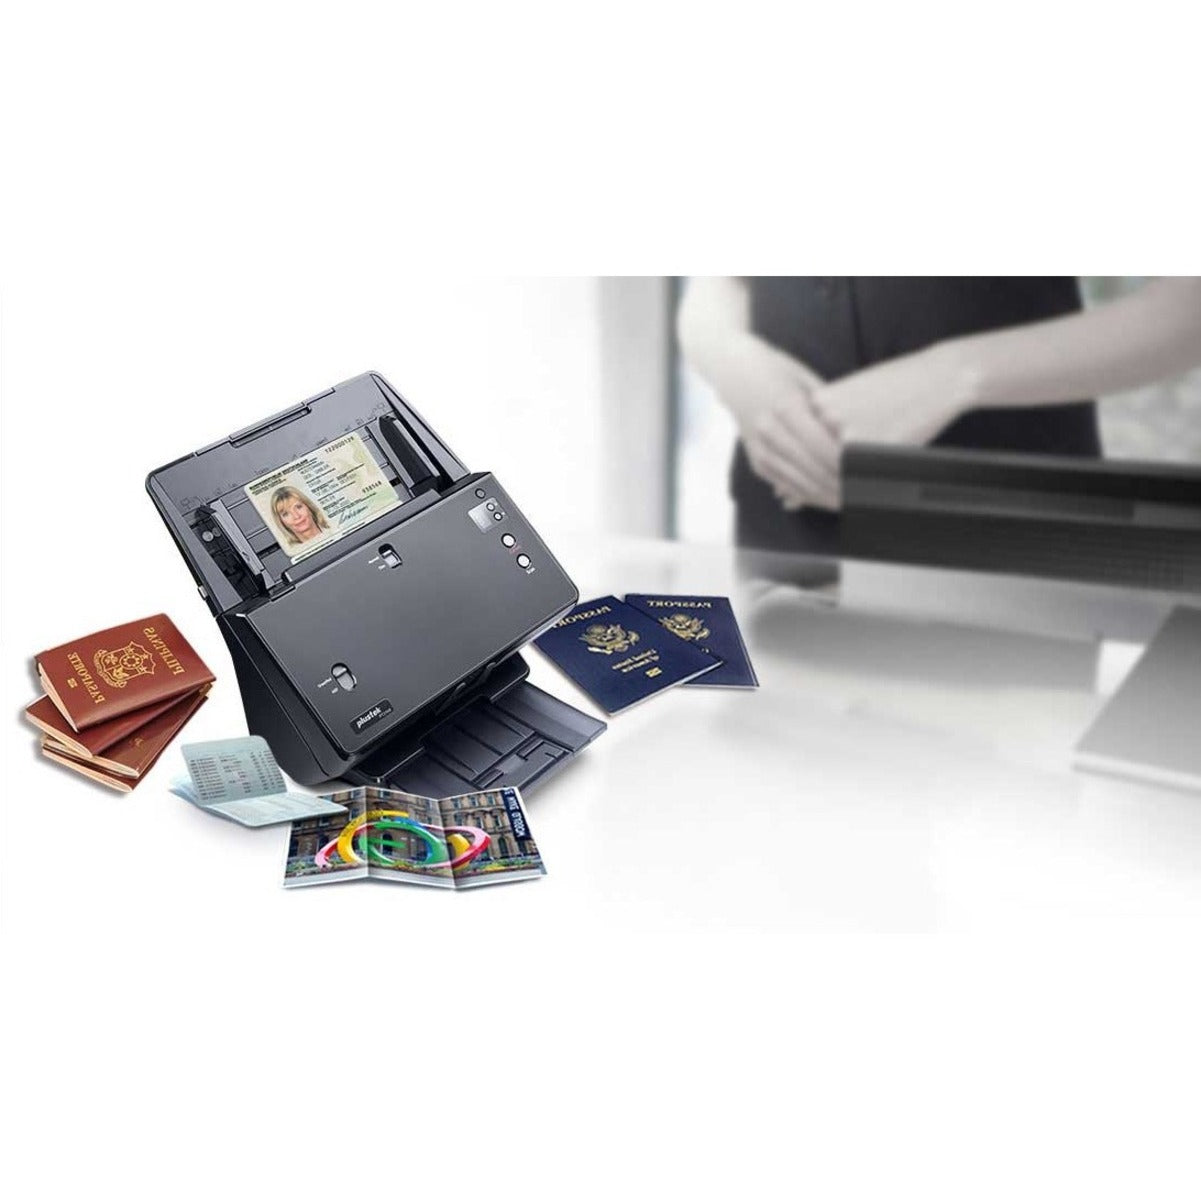 Plustek PT2160 SmartOffice ADF Scanner - Duplex Scanning